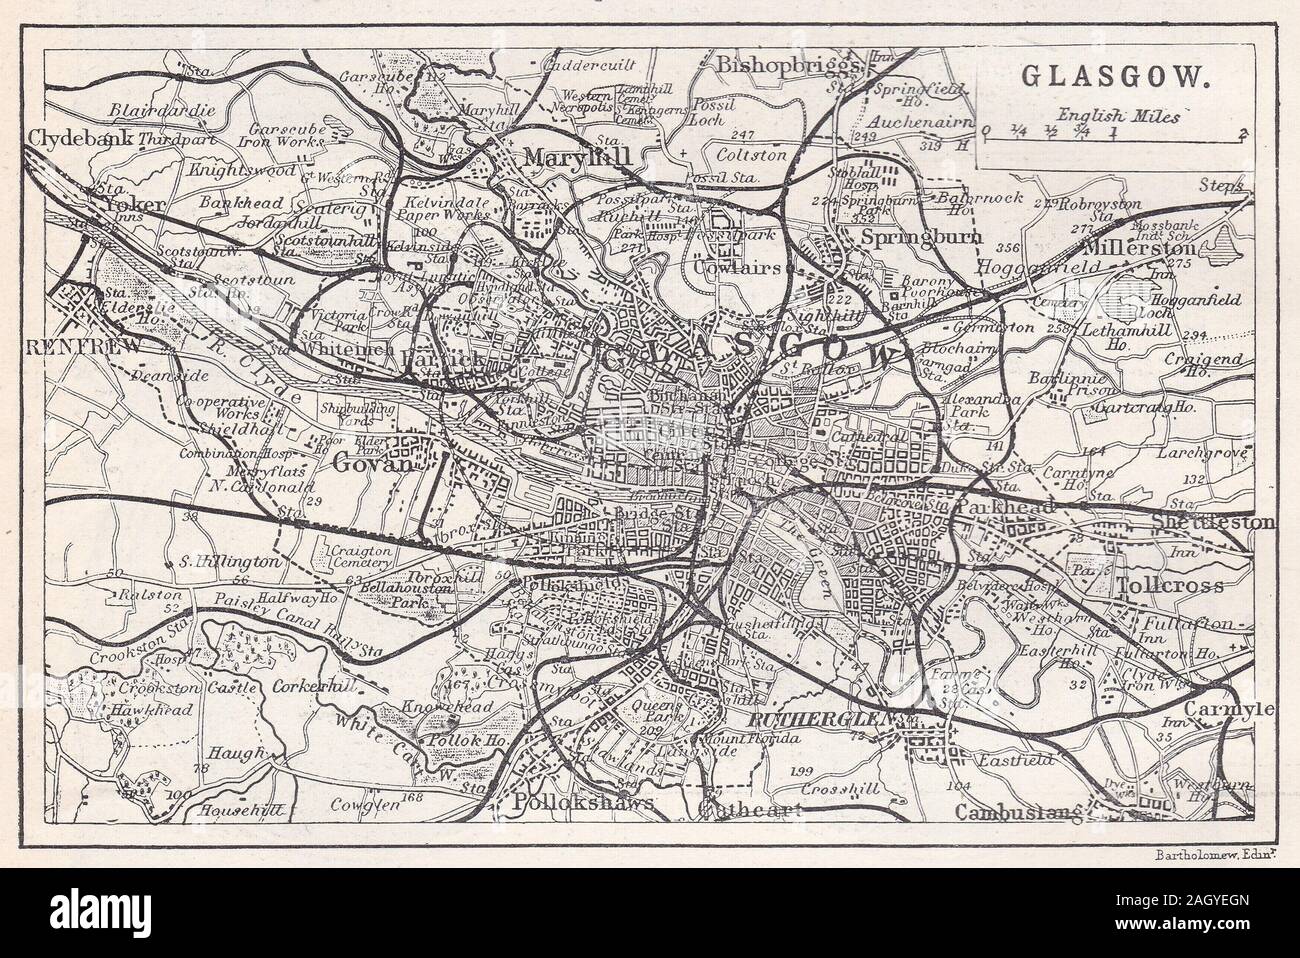 Vintage map of Glasgow, Scotland Stock Photo